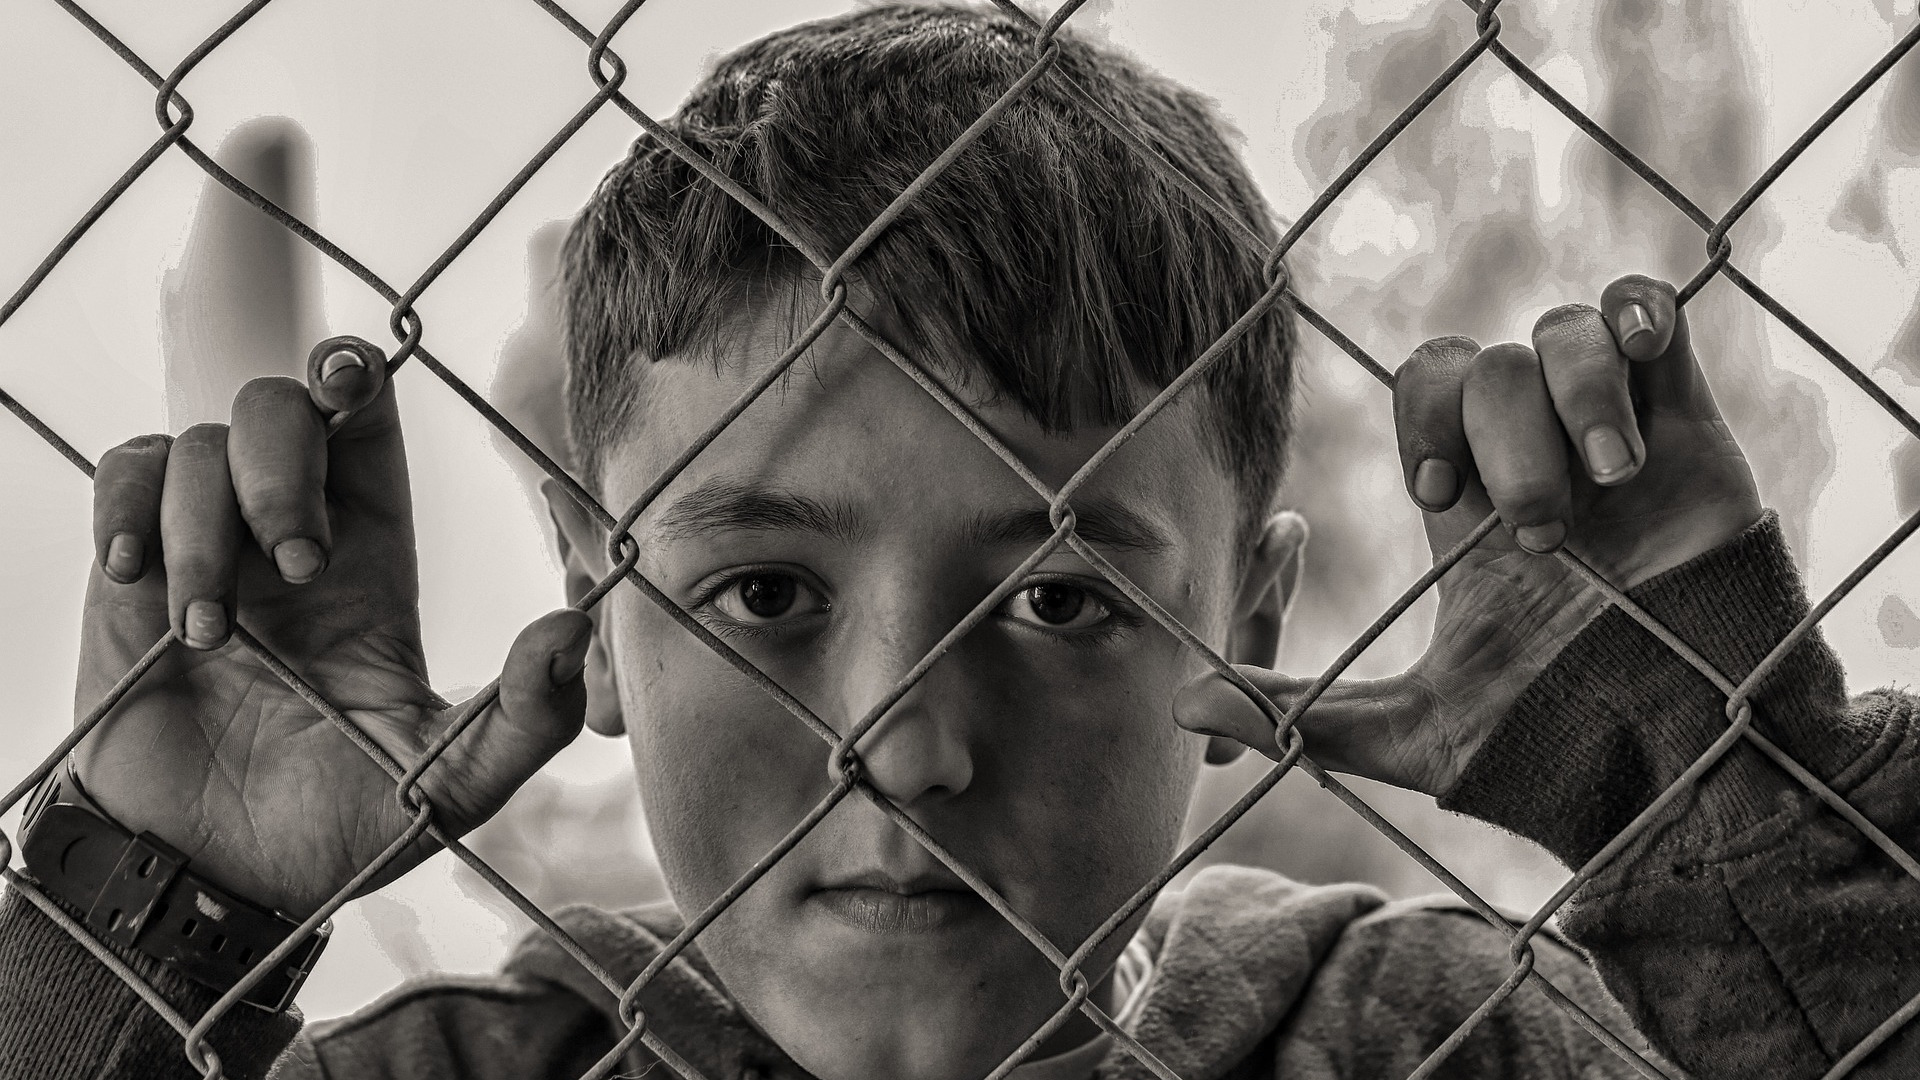 Bielorussia, i bambini militarizzati e schiavizzati: un documento sconvolgente